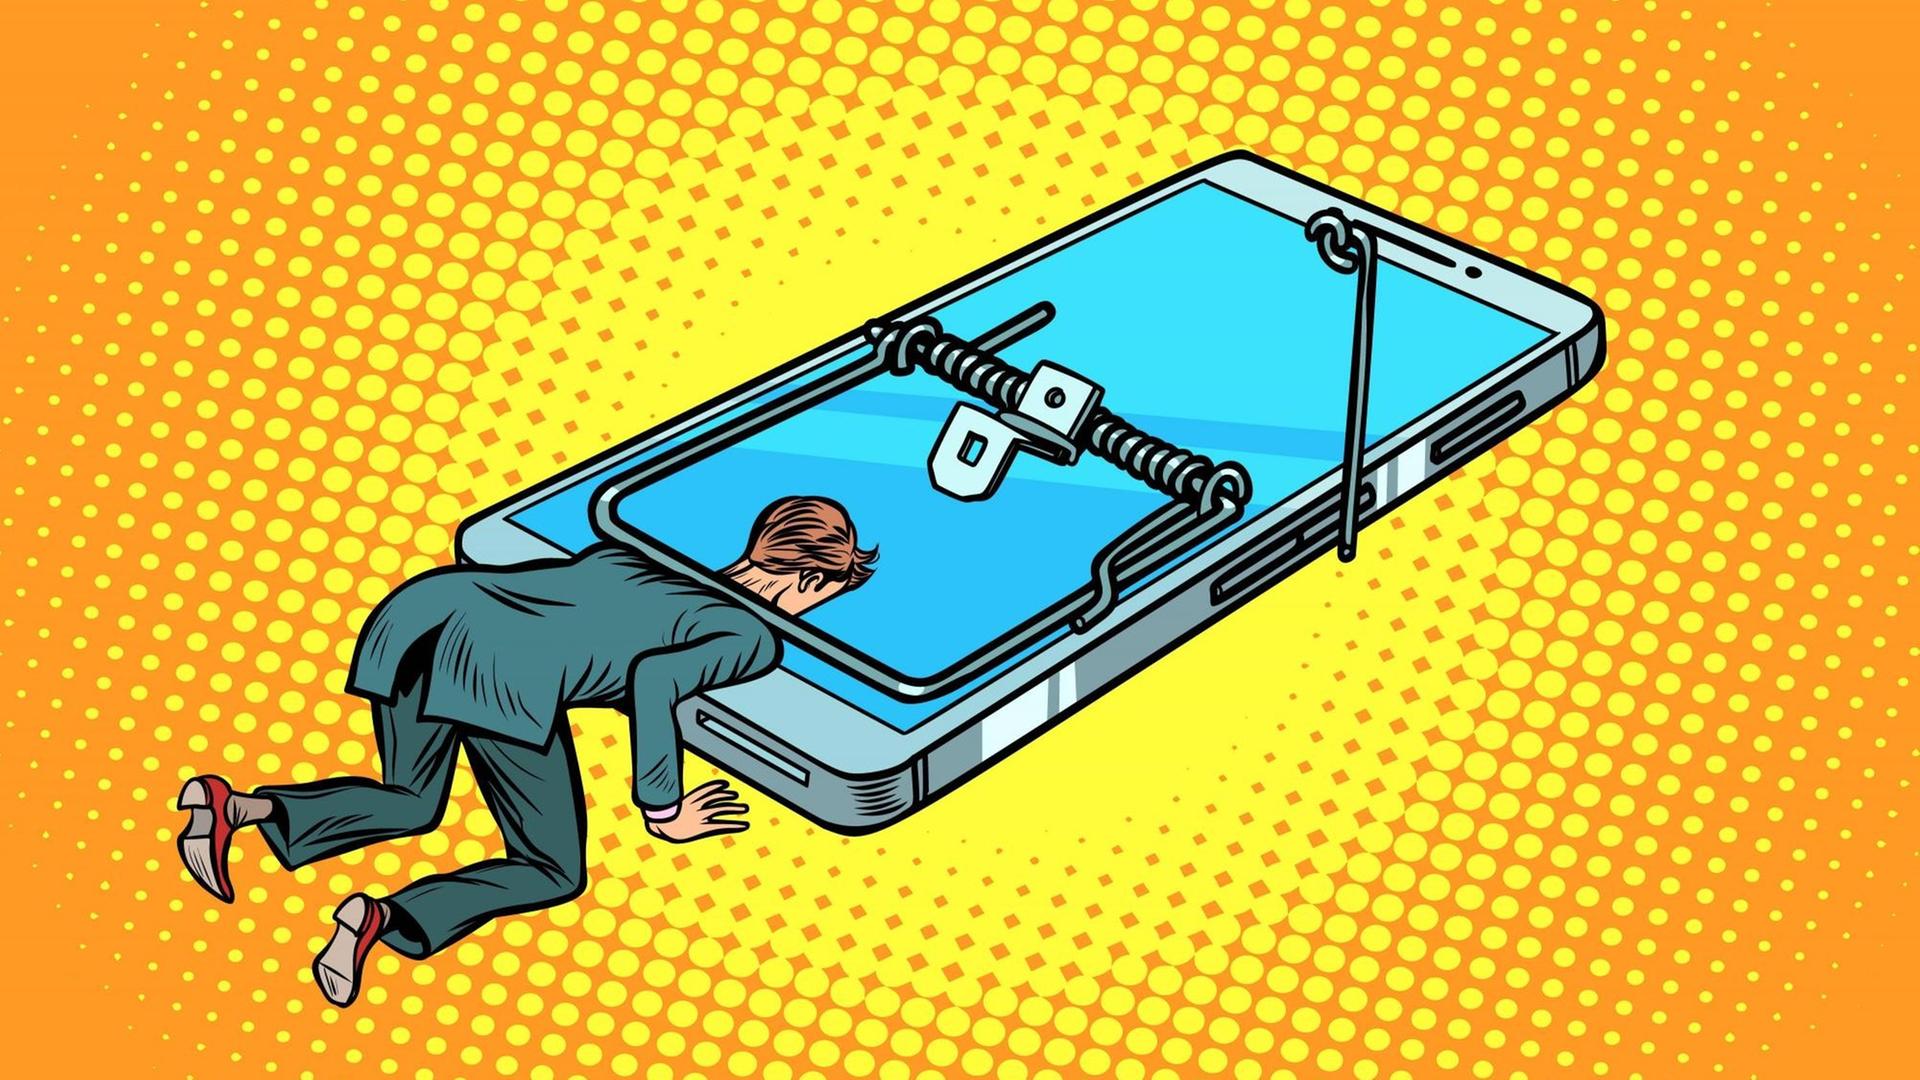 Eine Illustration zeigt einen Mann, der von einer Mausefalle in der Form eines Smartphones gefangen ist.